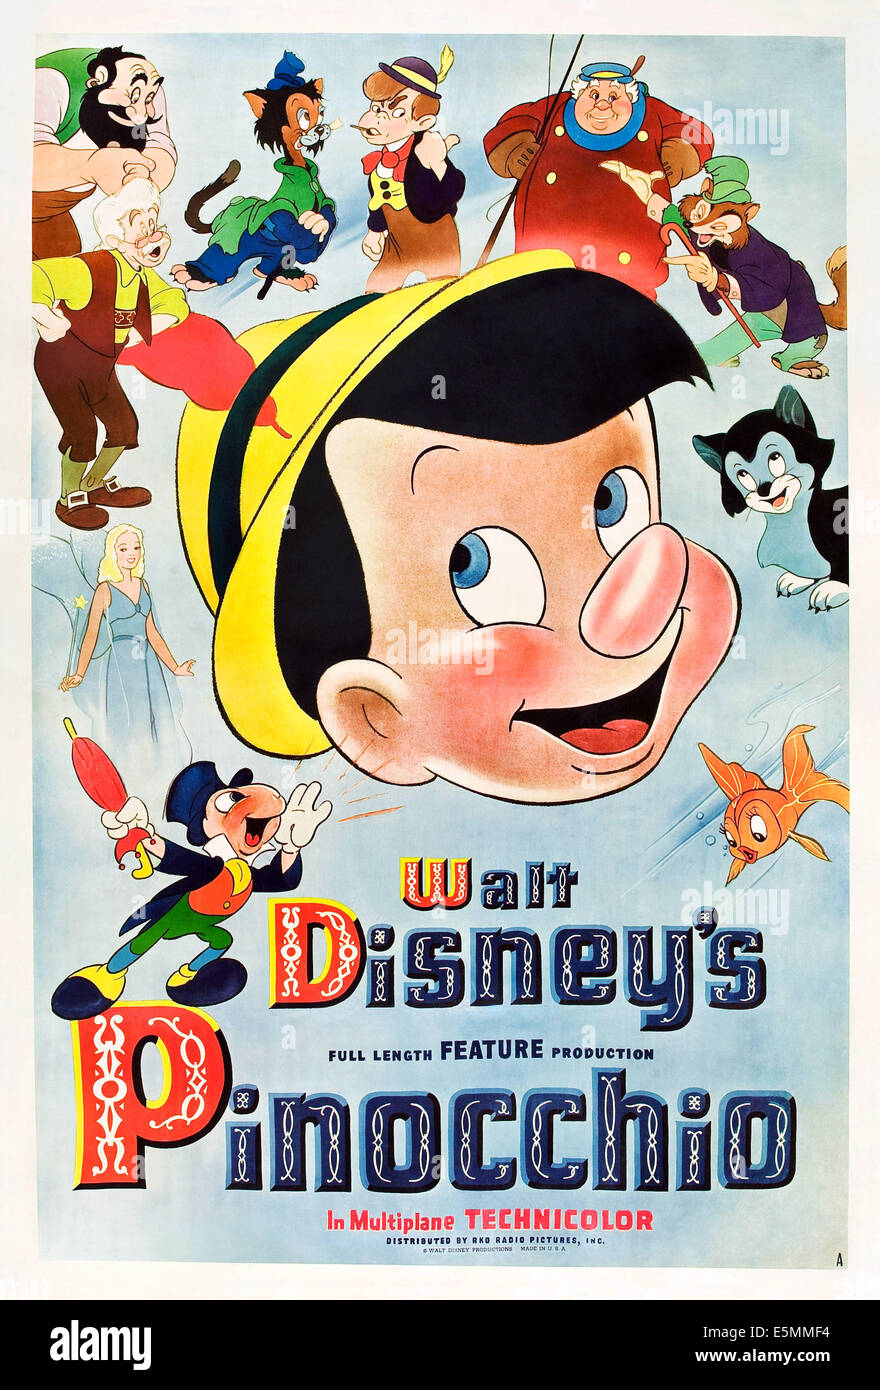 PINOCCHIO, Pinocchio : Centre ; dans le sens horaire à partir de la partie inférieure gauche : Jiminy Cricket, La Fée Bleue, Geppetto, Stromboli, Gideon, Lampwick, Banque D'Images